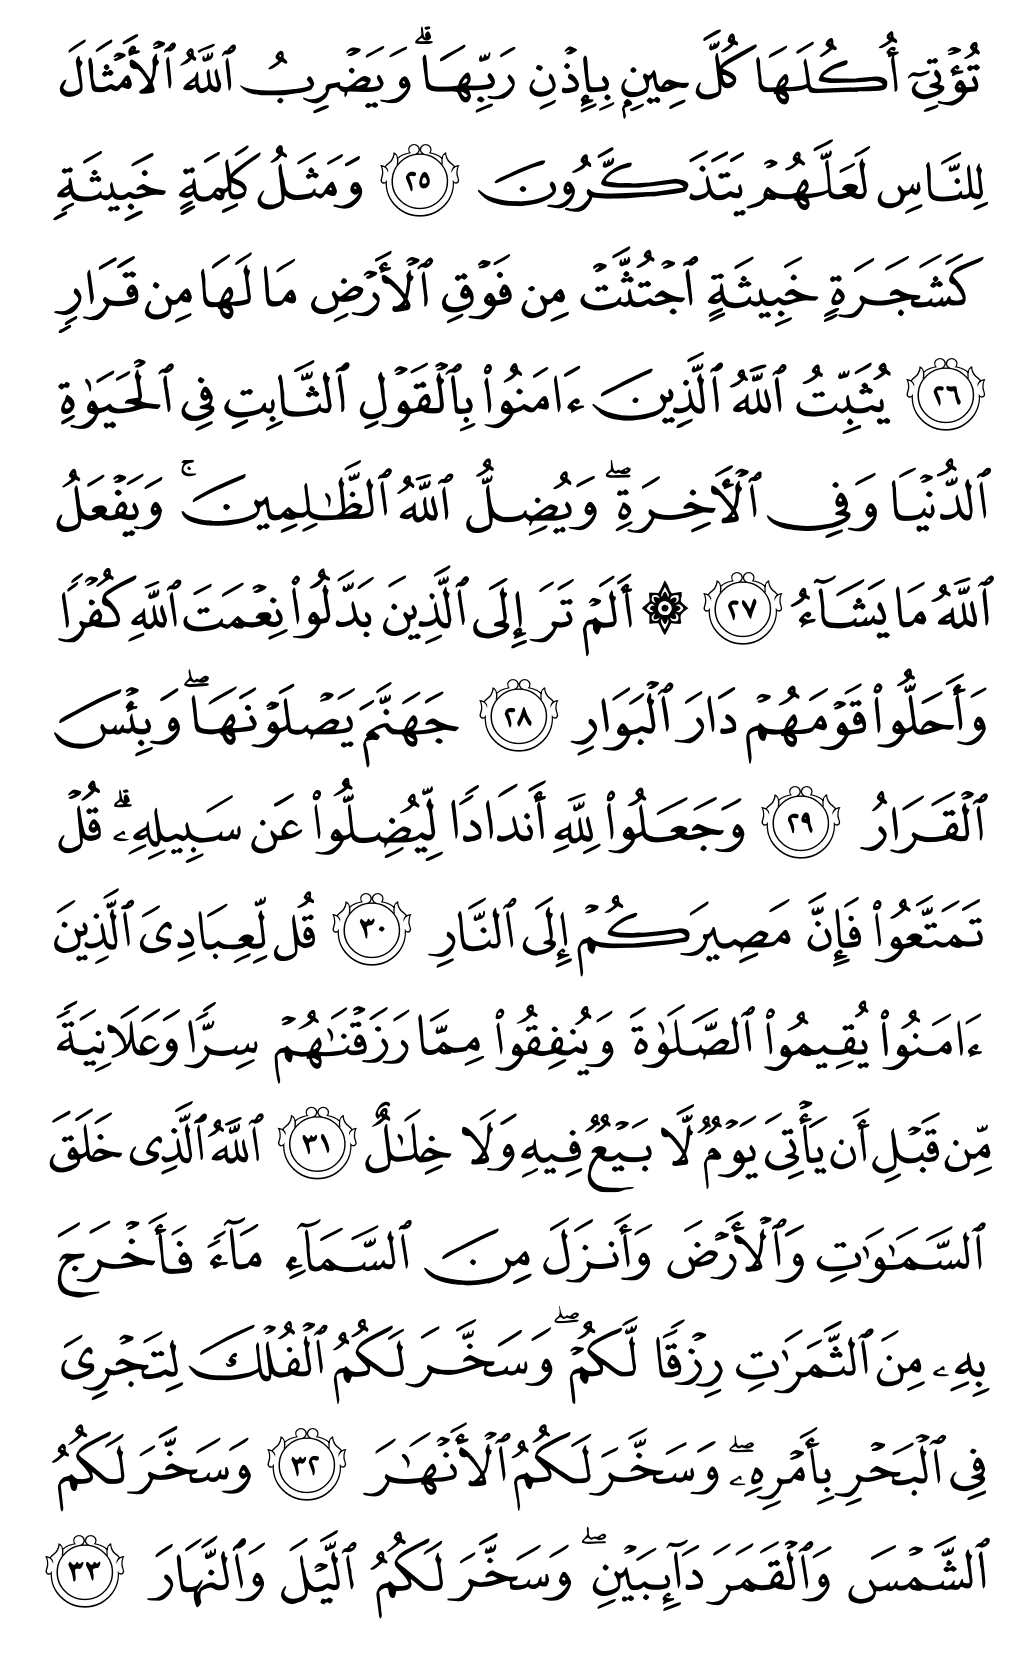 الصفحة رقم 259 من القرآن الكريم